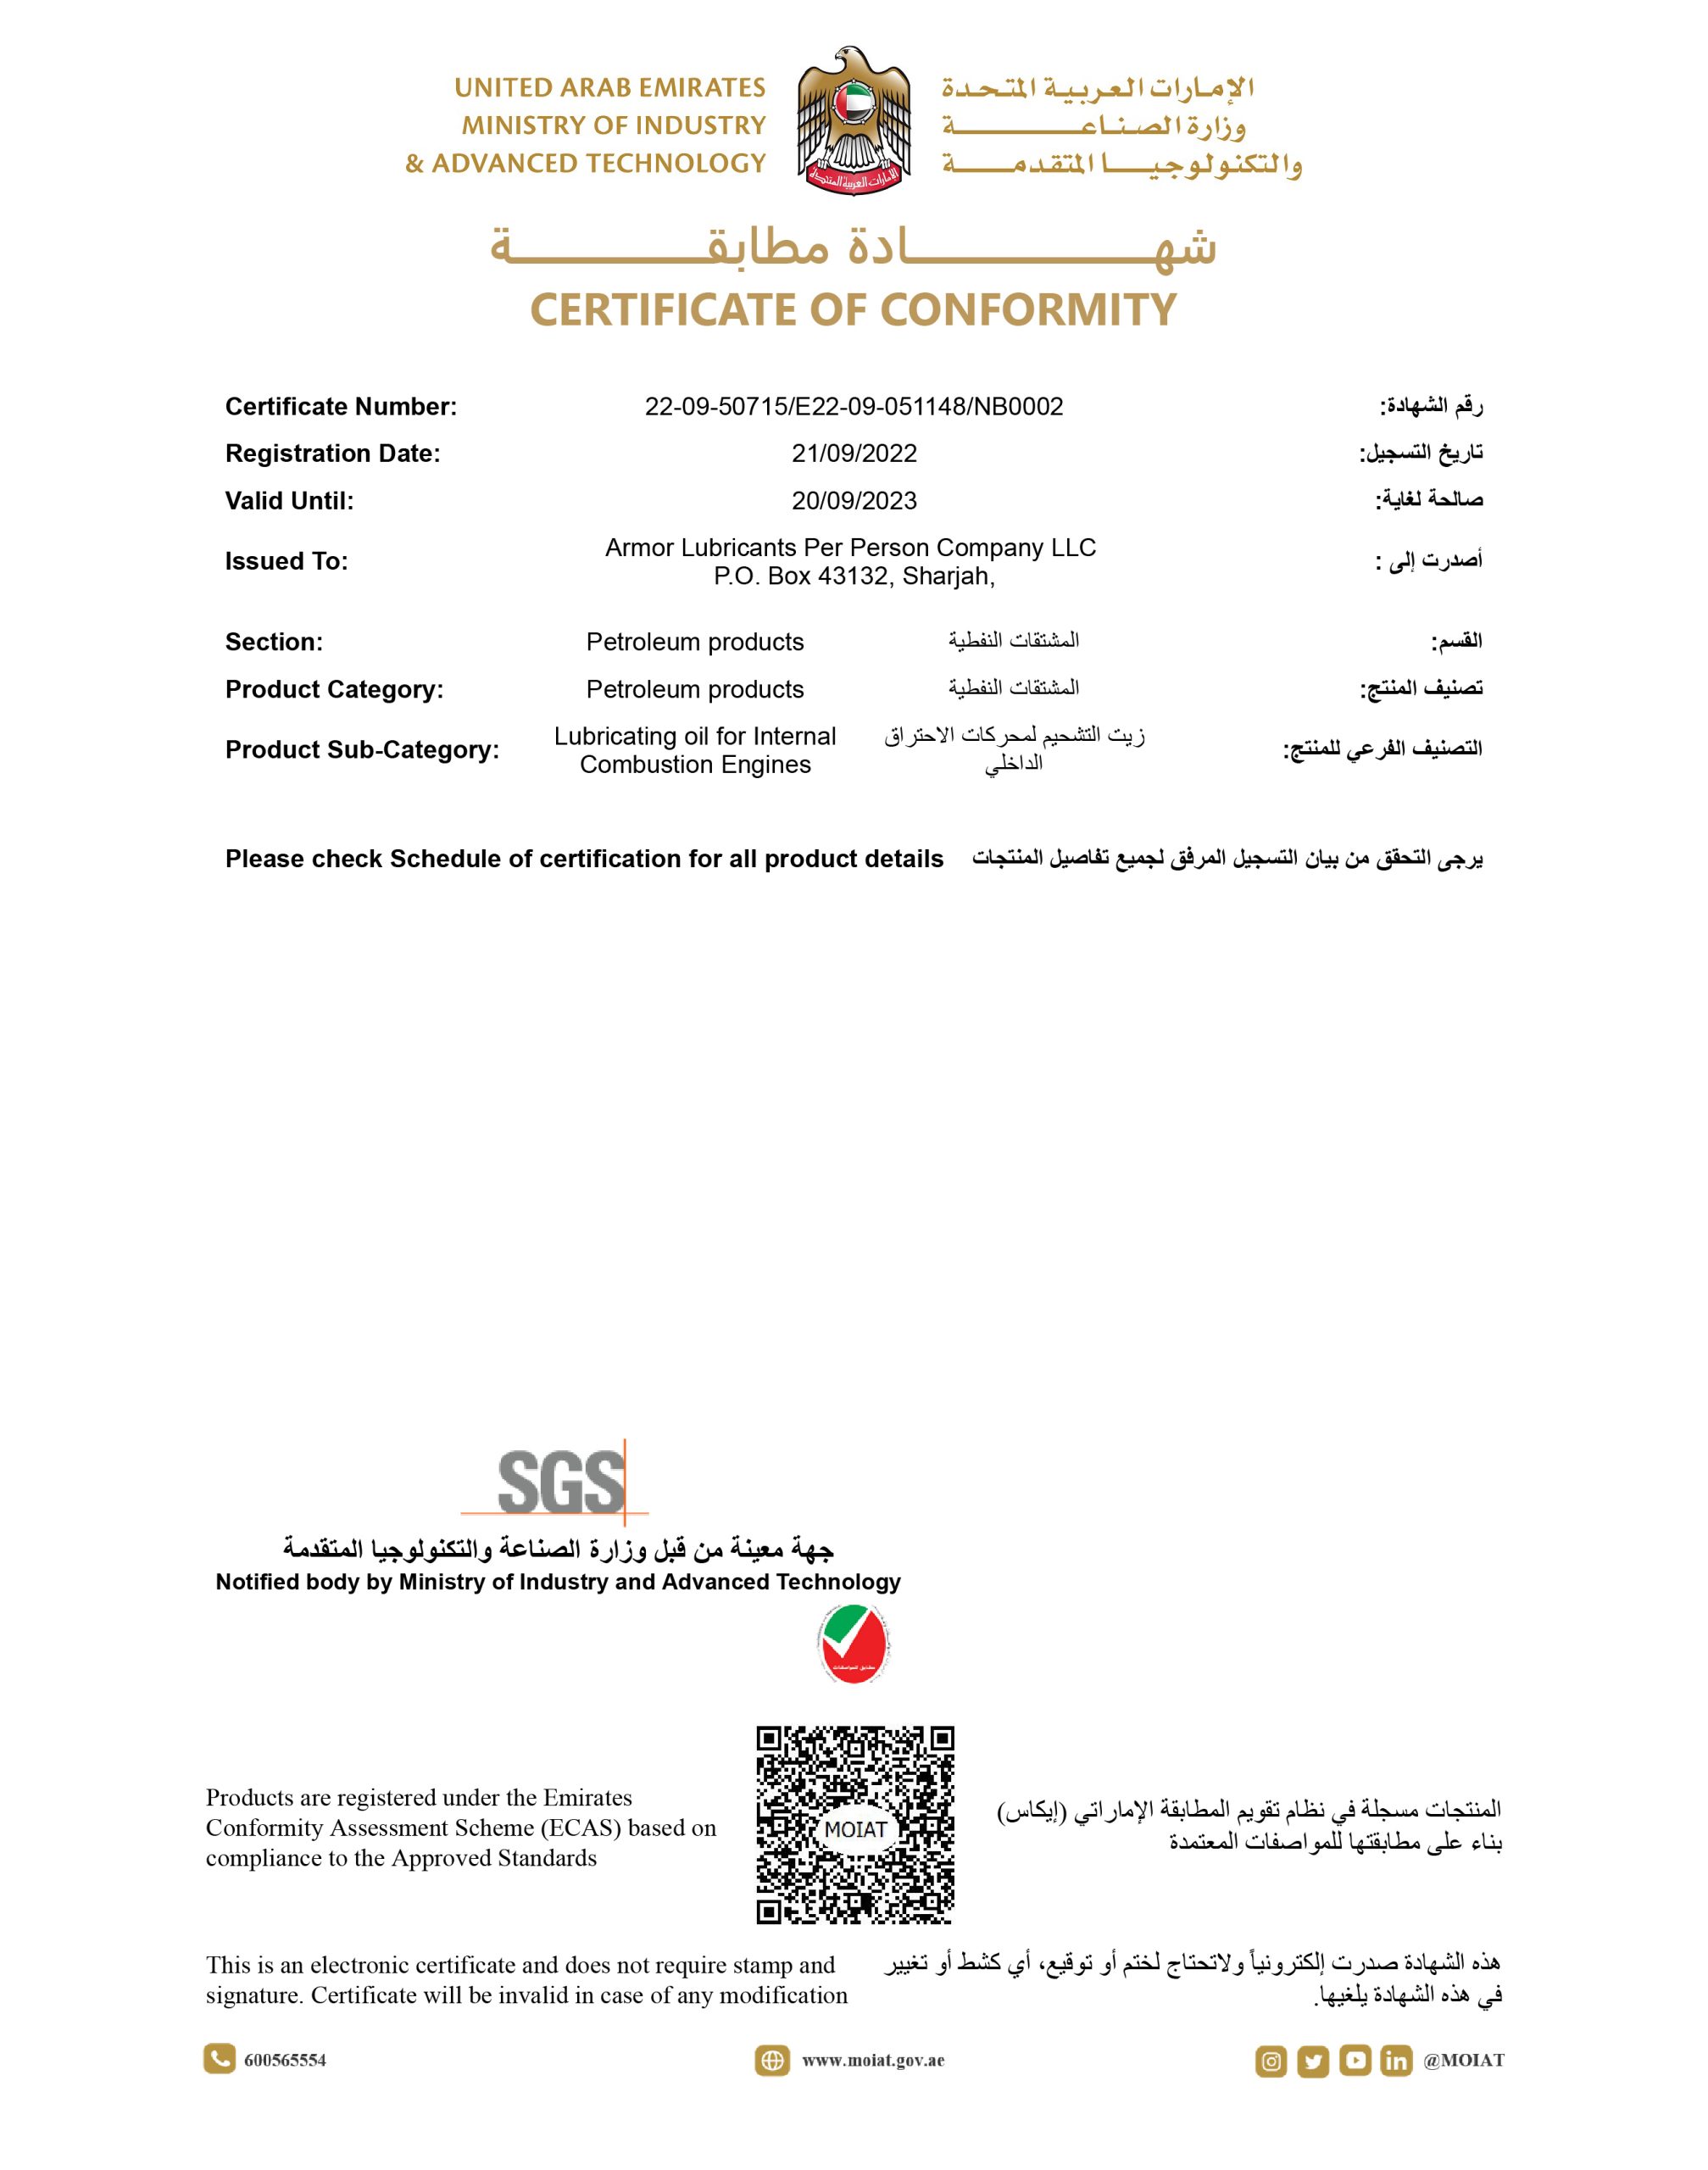 Armor ESMA Certificate of Conformity